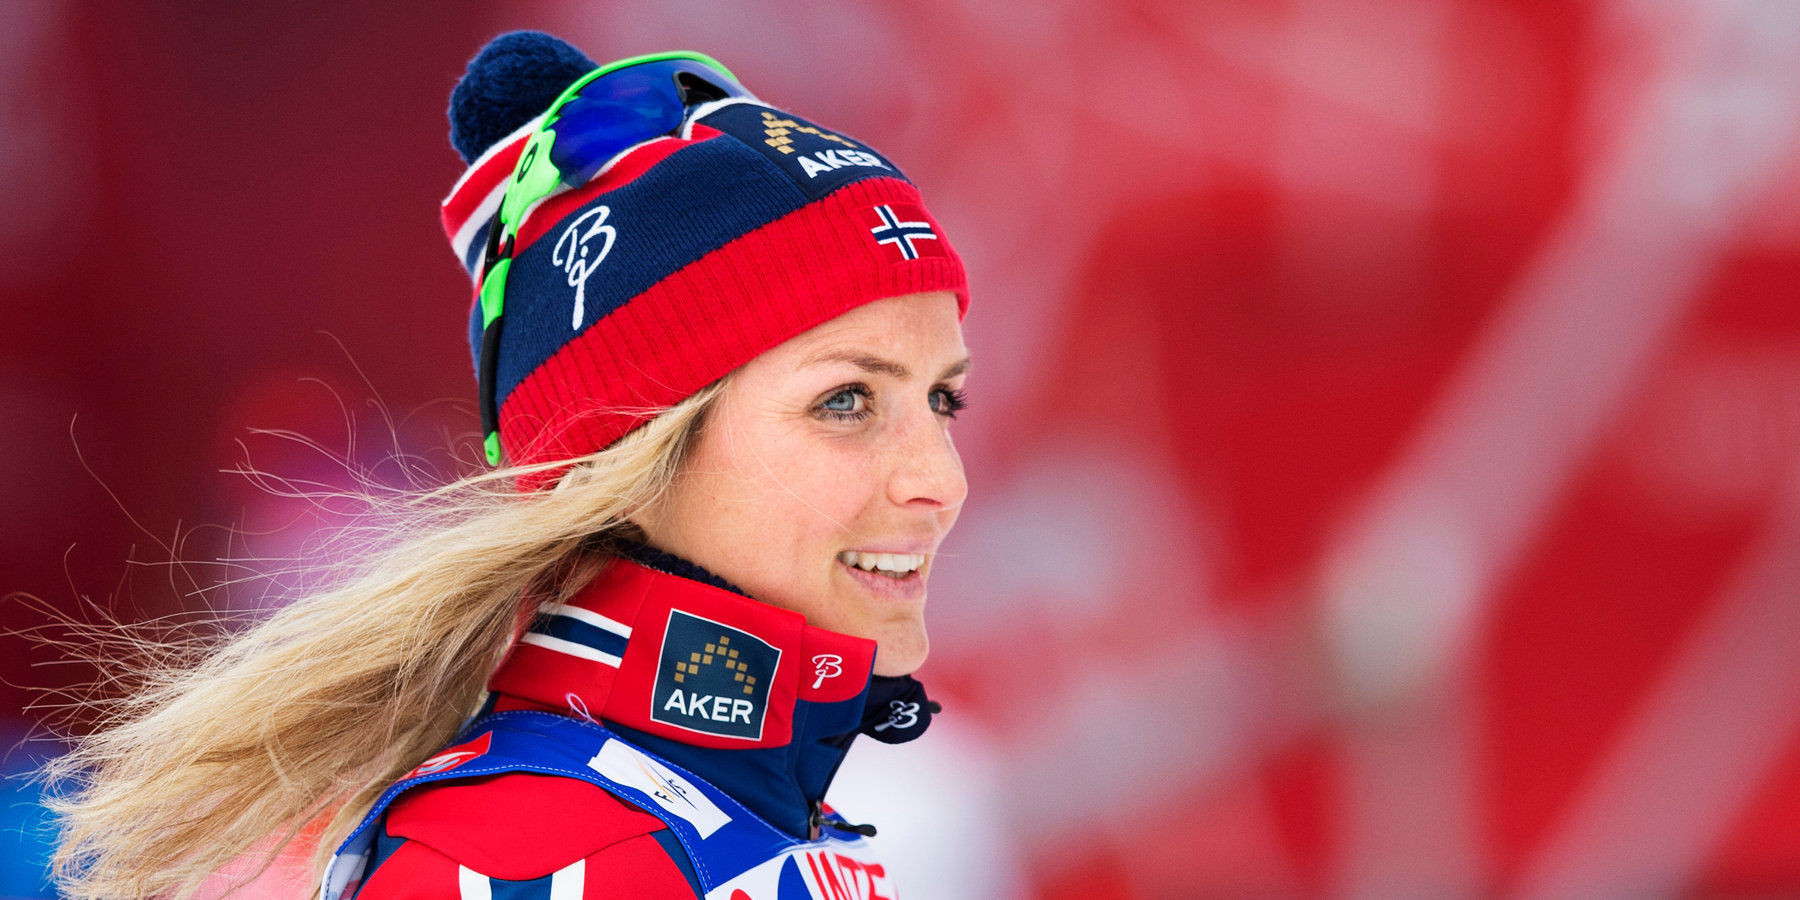 Лидер Кубка мира по лыжным гонкам Тереза Йохауг выиграла спринт в гору своб...